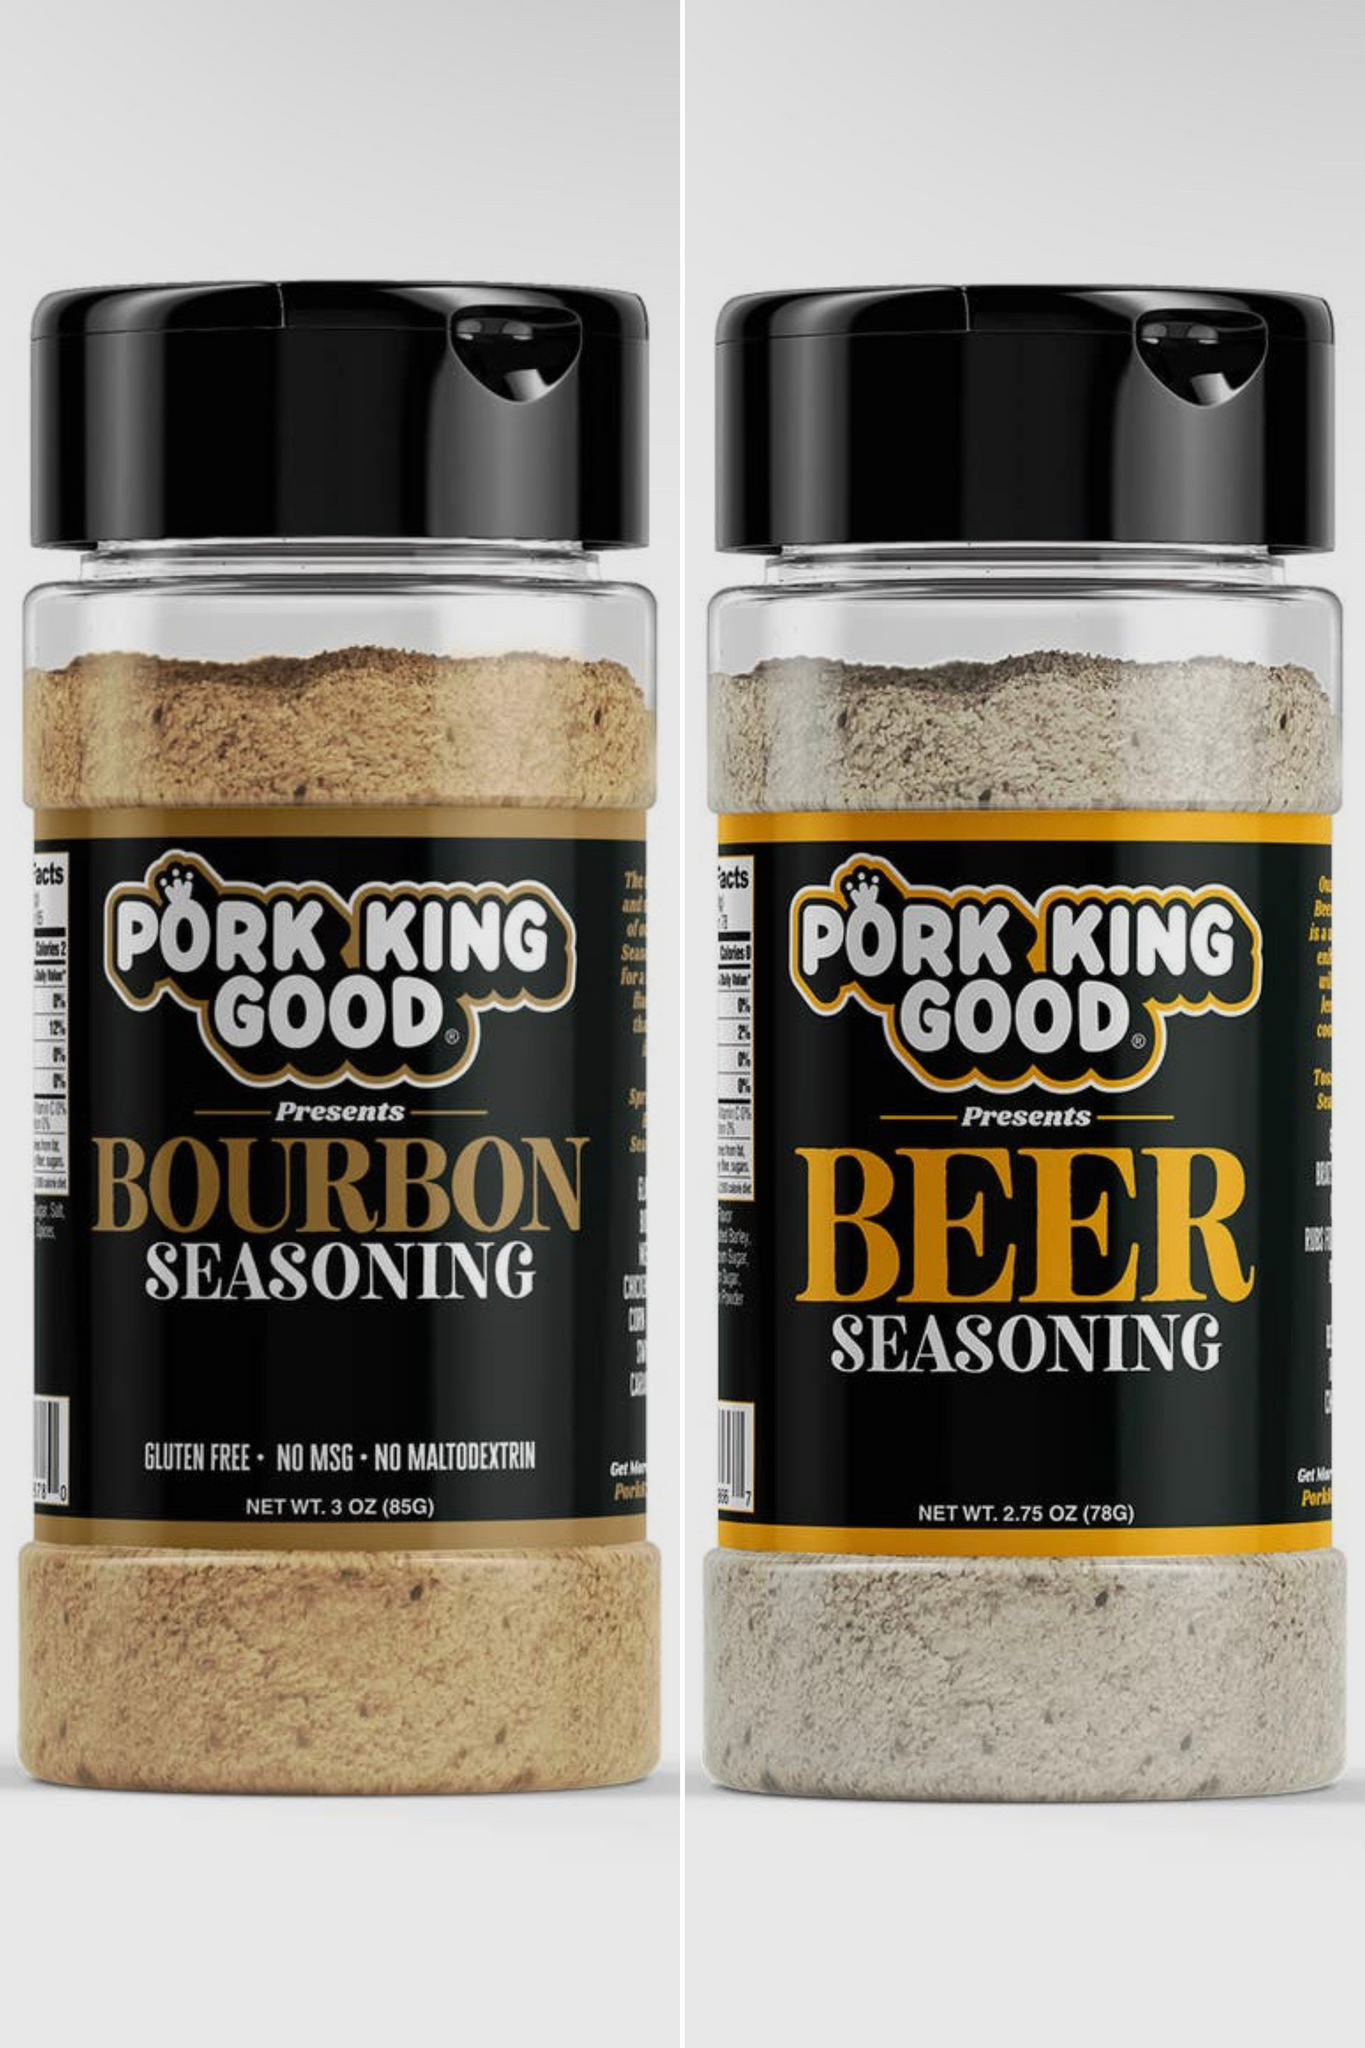 Pork King Good Beer/ Bourbon Seasonings